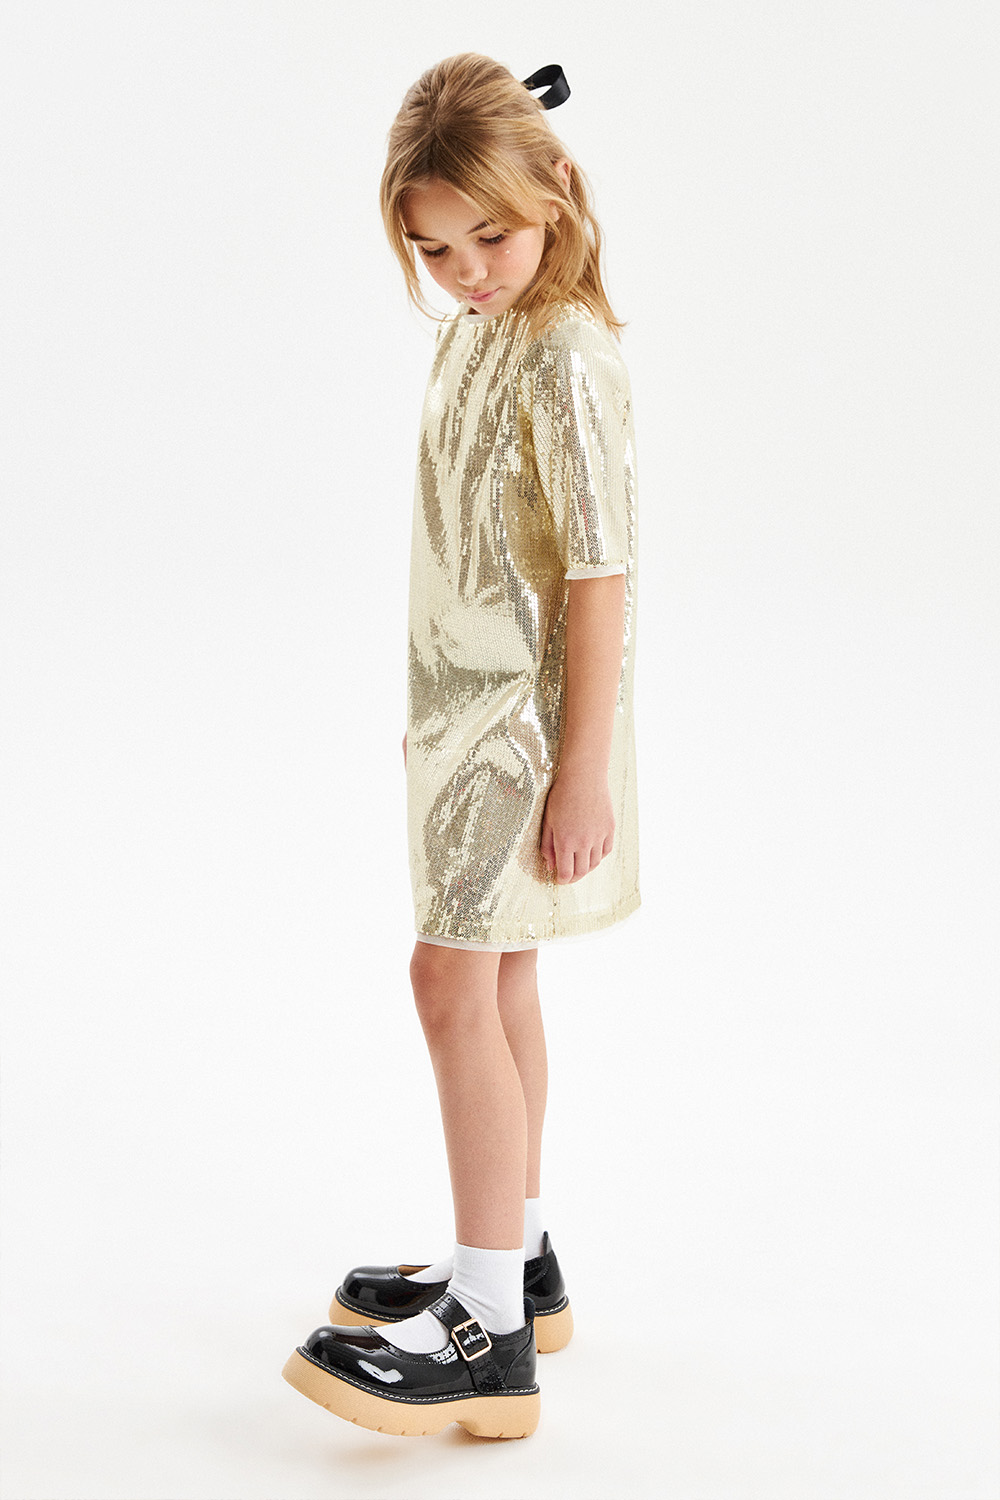 Золотое платье с пайетками (SNFWG-319-23614-900) Silver Spoon